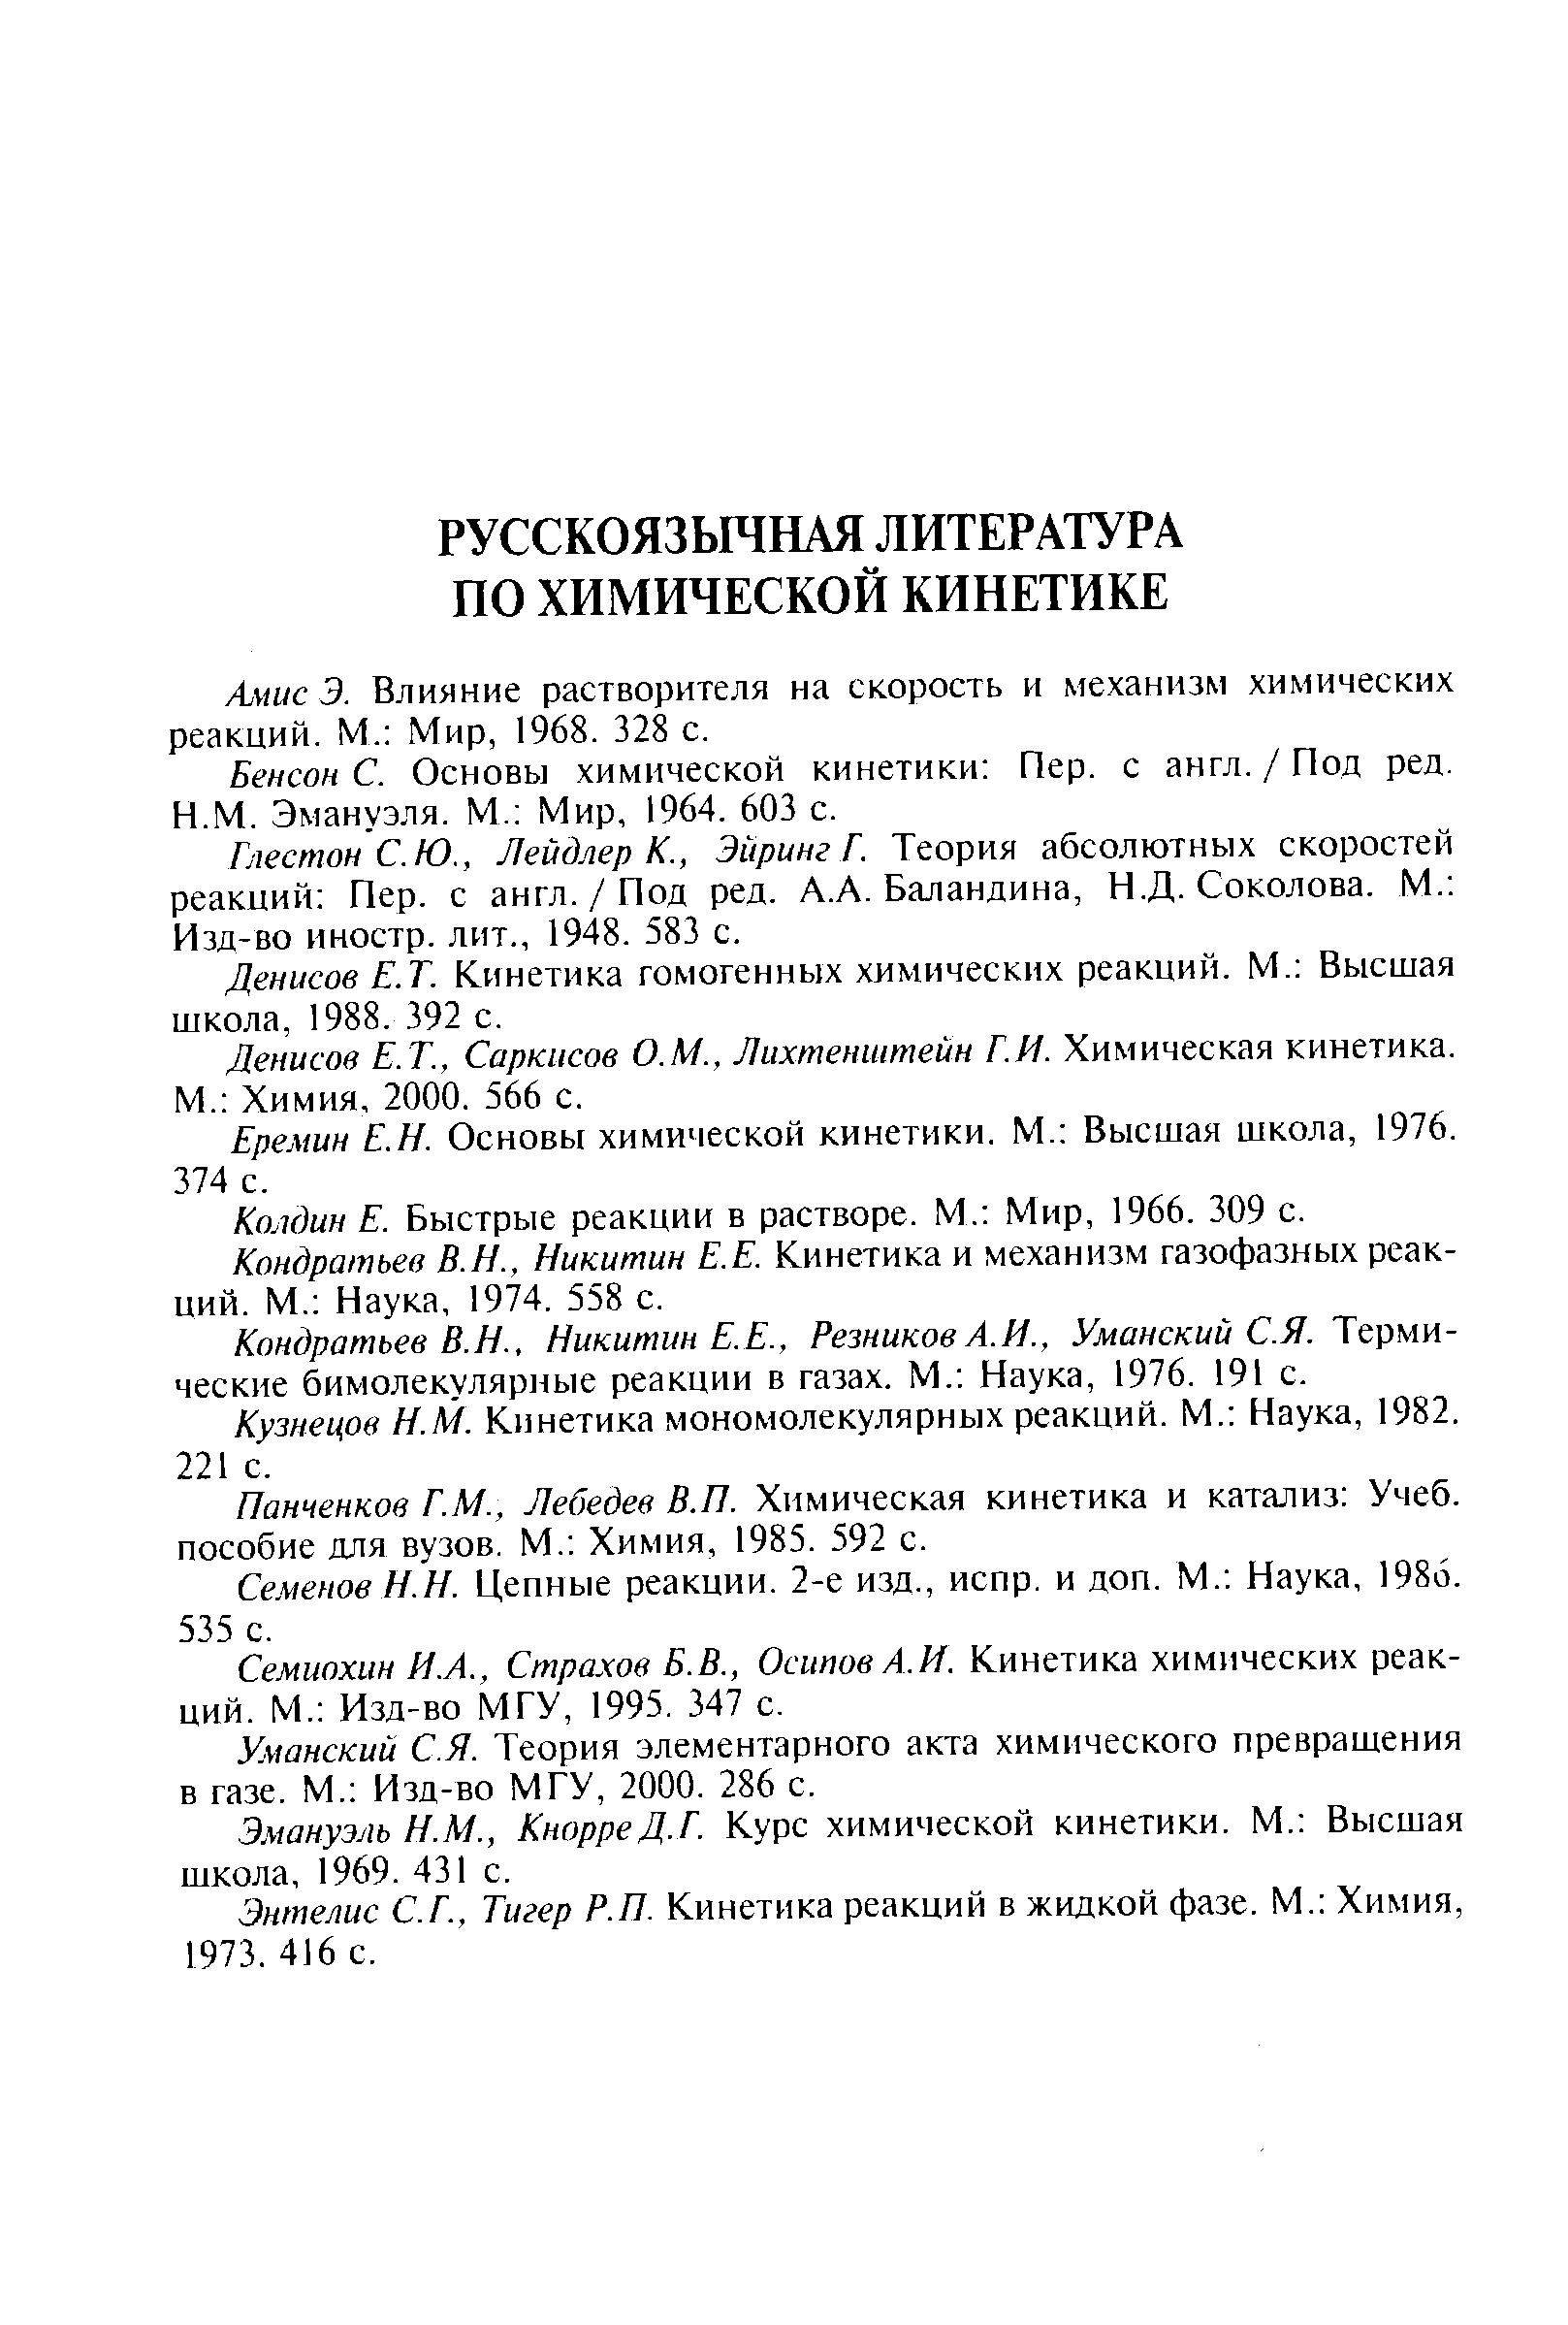 Бенсон С. Основы химической кинетики Пер. с англ./Под ред.